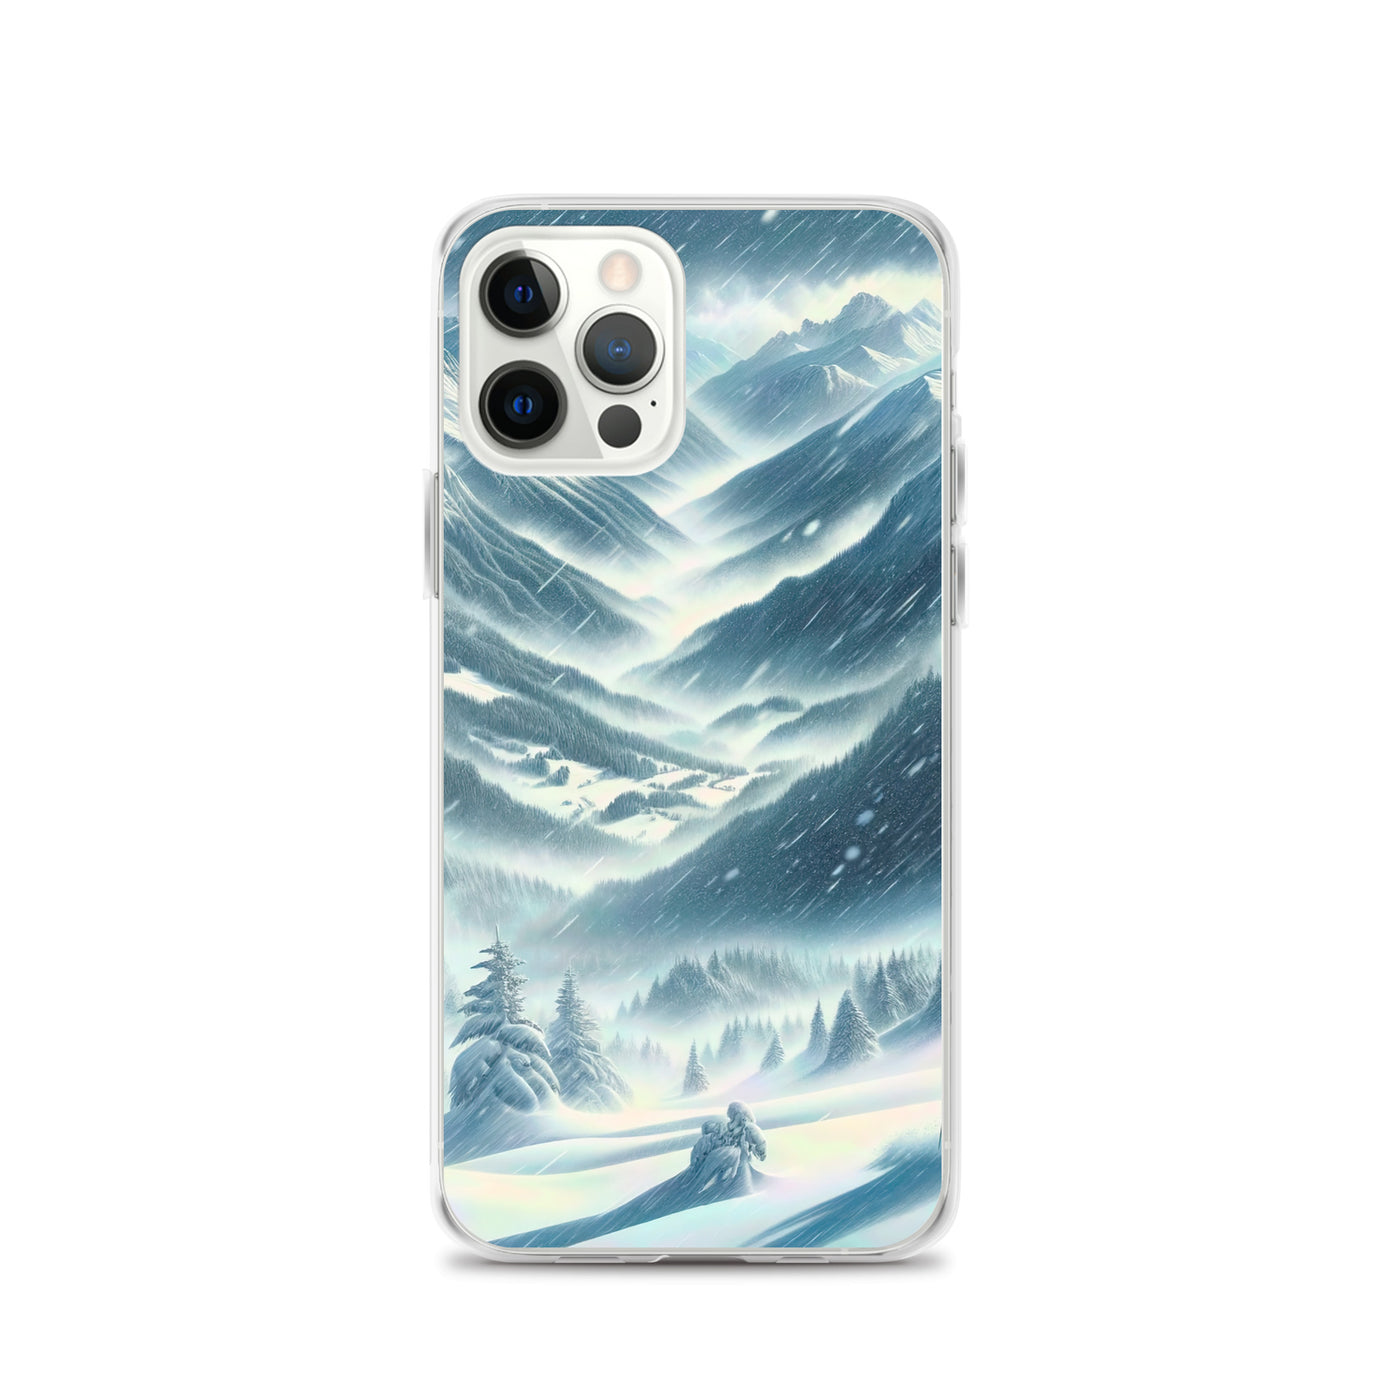 Alpine Wildnis im Wintersturm mit Skifahrer, verschneite Landschaft - iPhone Schutzhülle (durchsichtig) klettern ski xxx yyy zzz iPhone 12 Pro